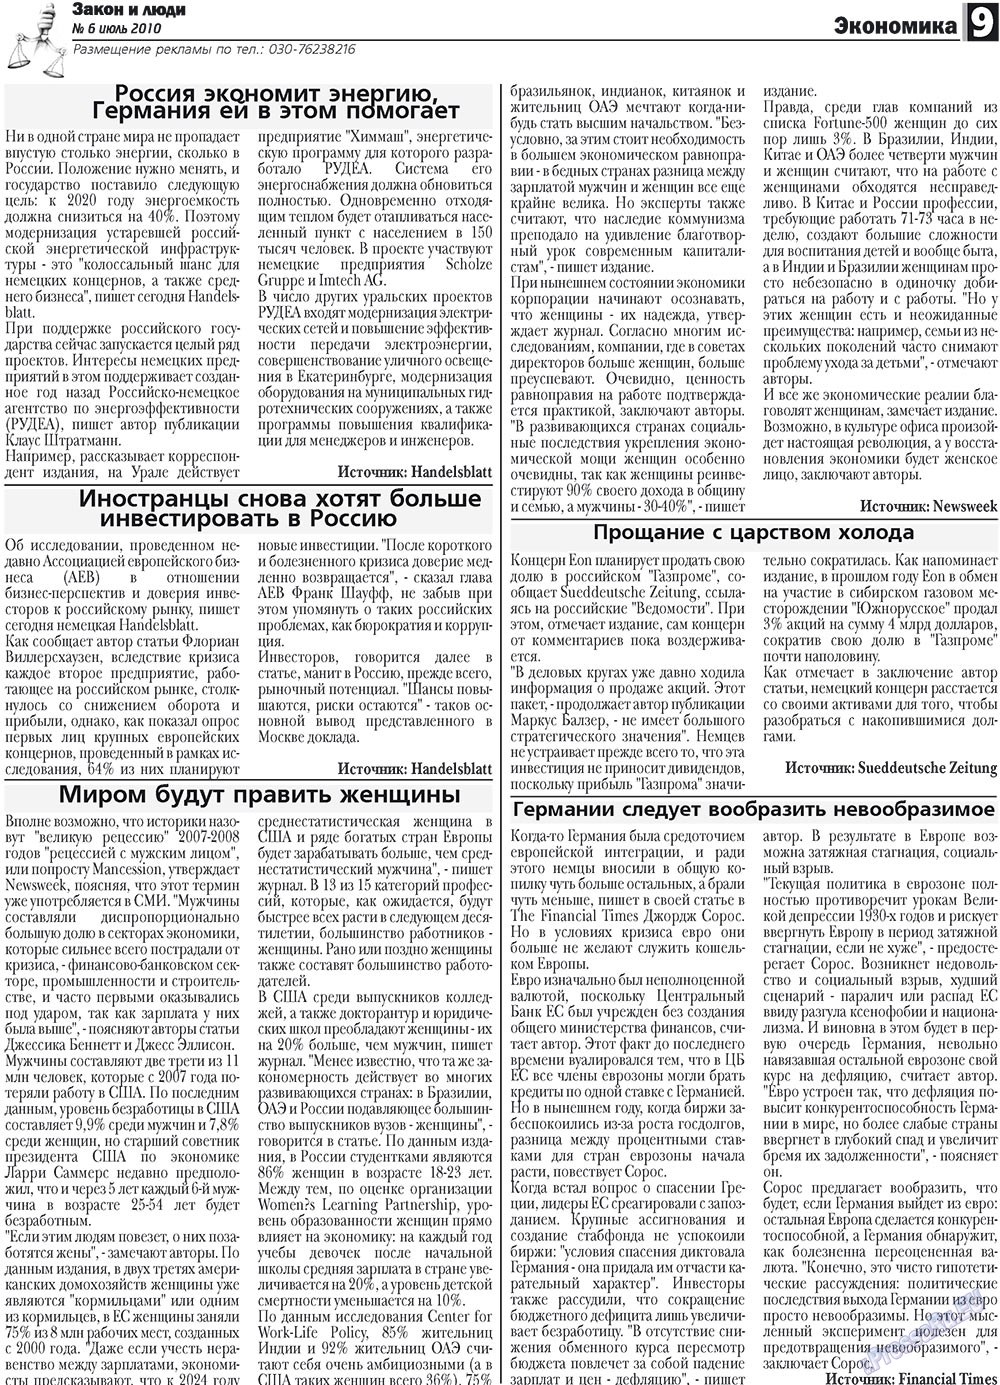 Закон и люди, газета. 2010 №6 стр.9